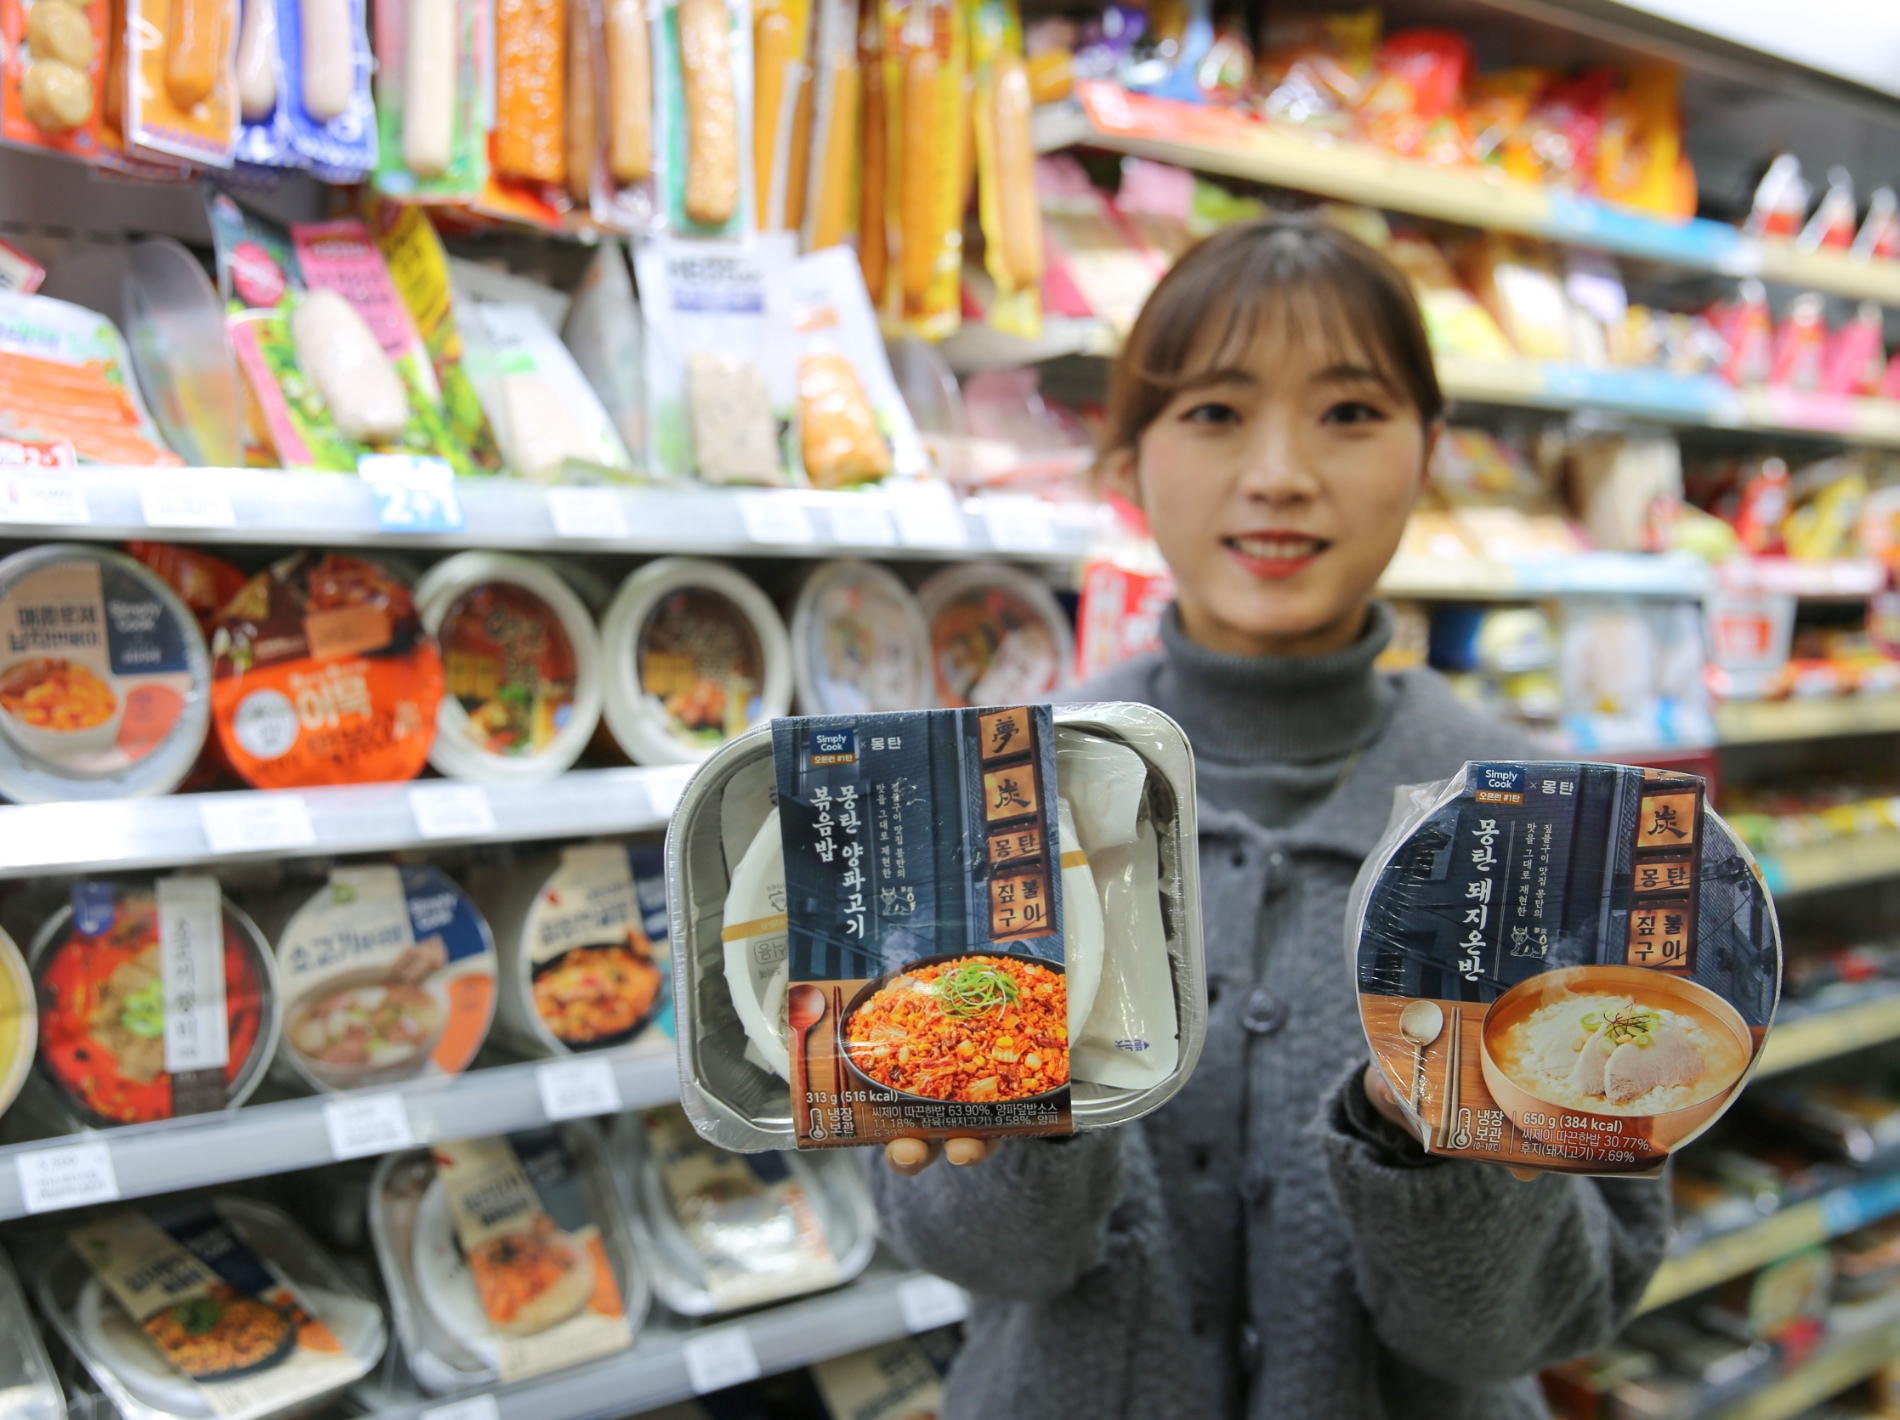 [생활경제 이슈] GS25, 전국 오픈런 맛집 1탄 몽탄 간편식 출시 外